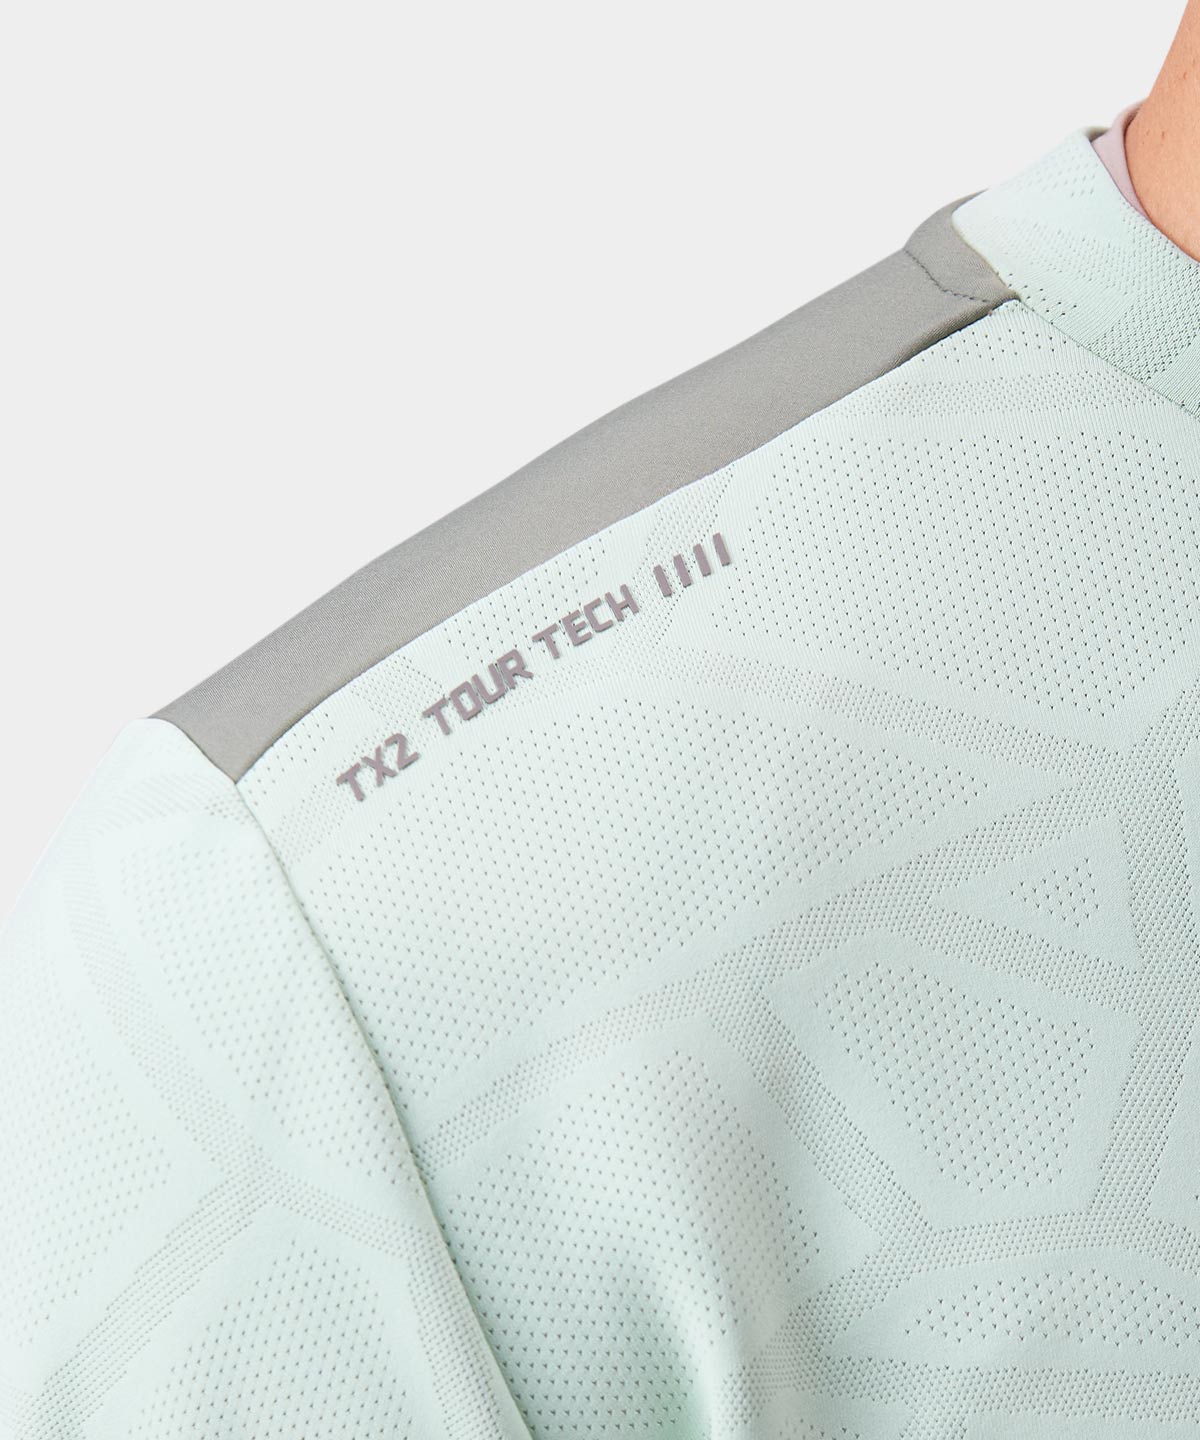 Mint Hybrid Tech Sweatshirt